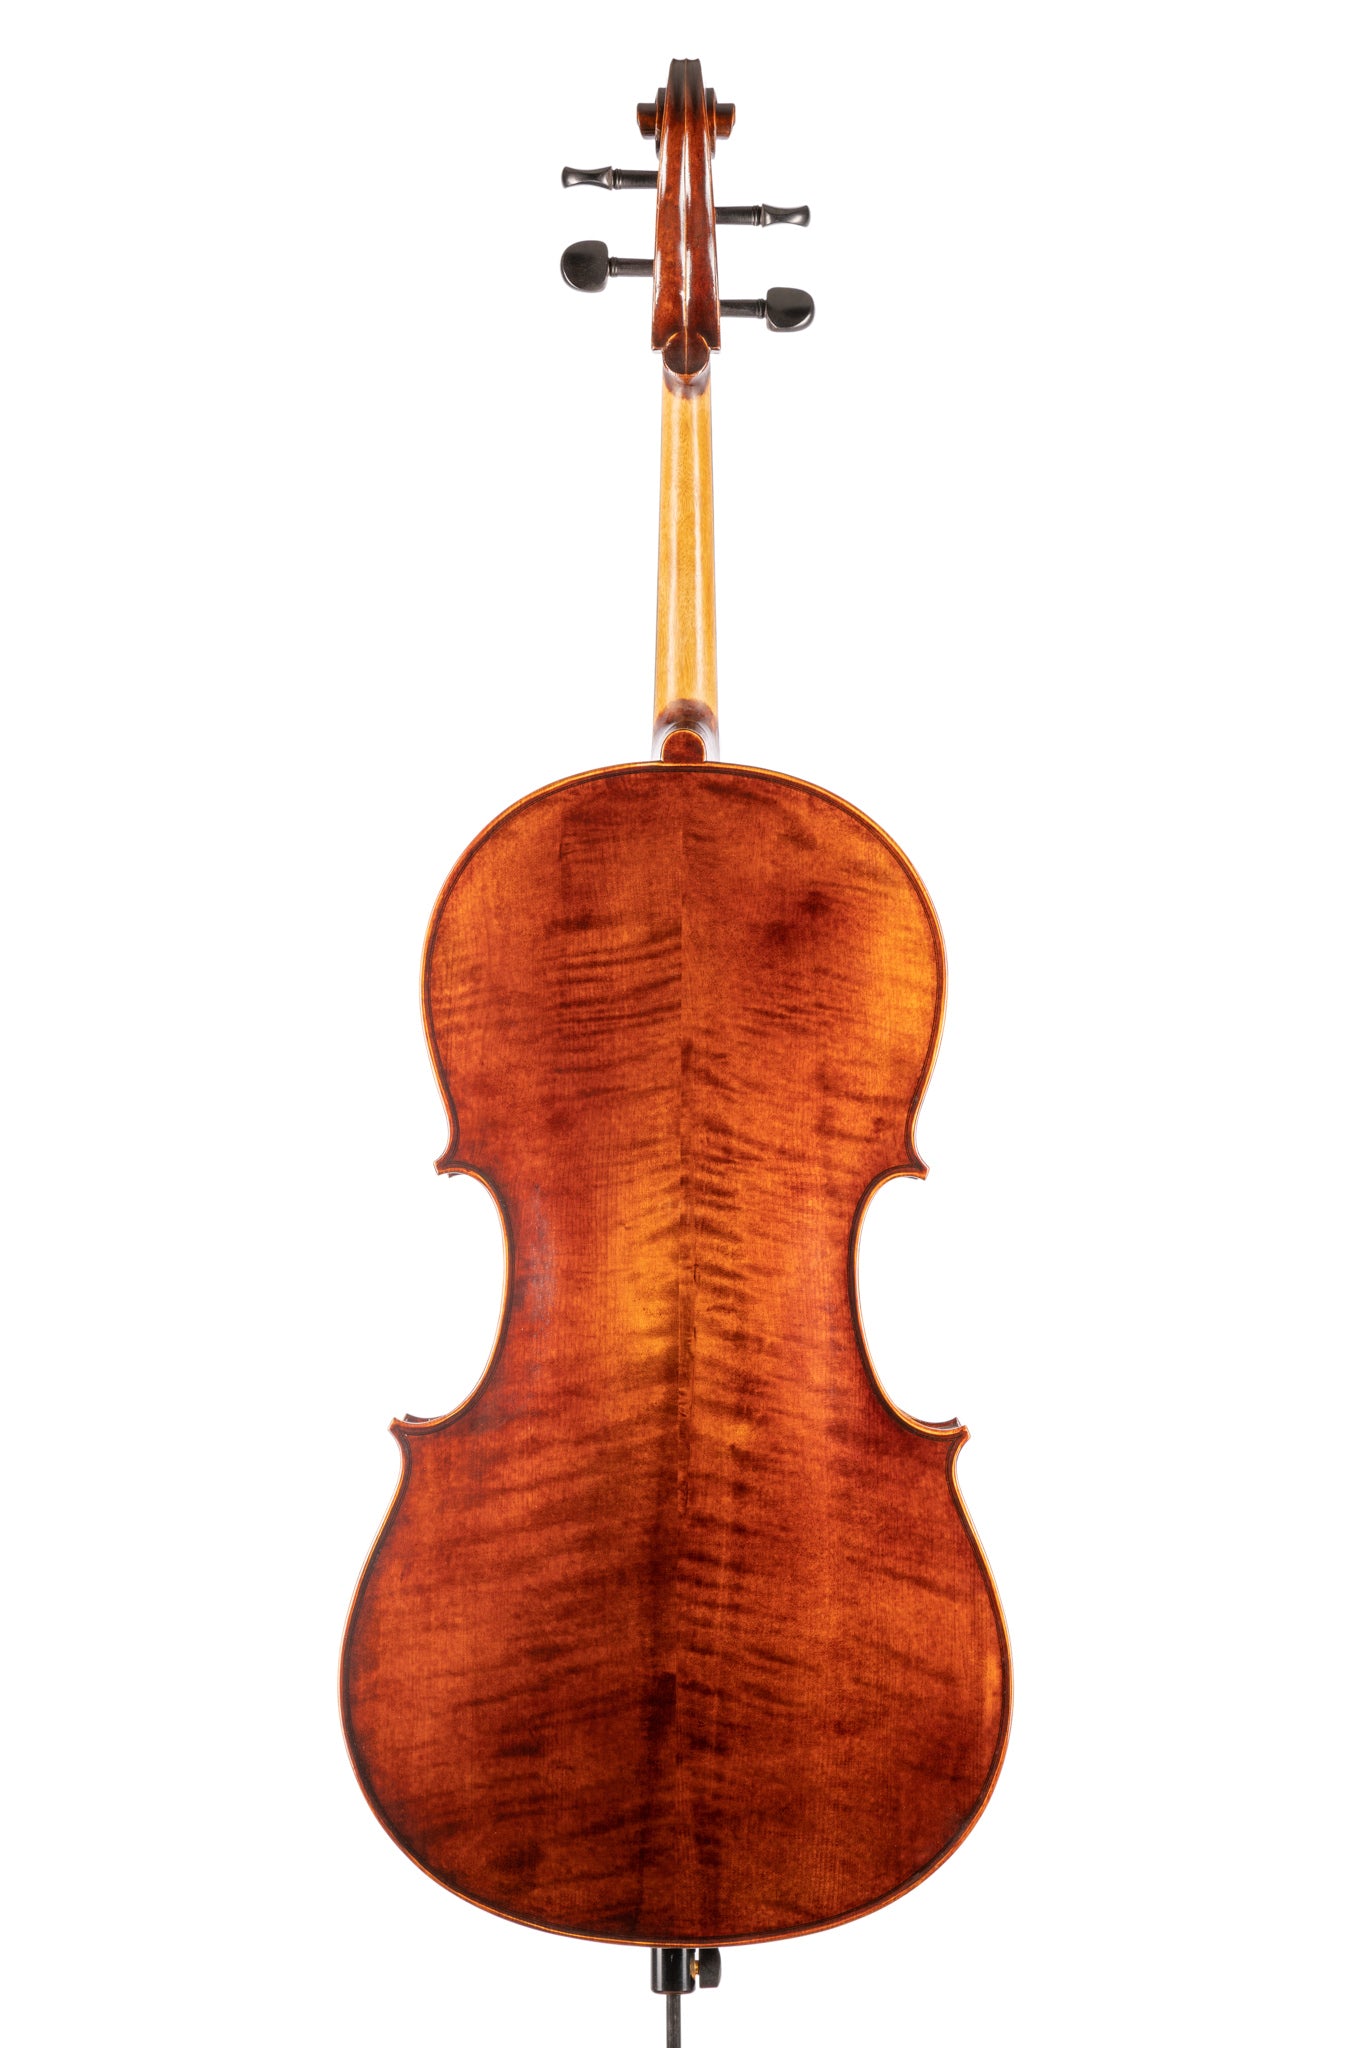 BL-300 Cello